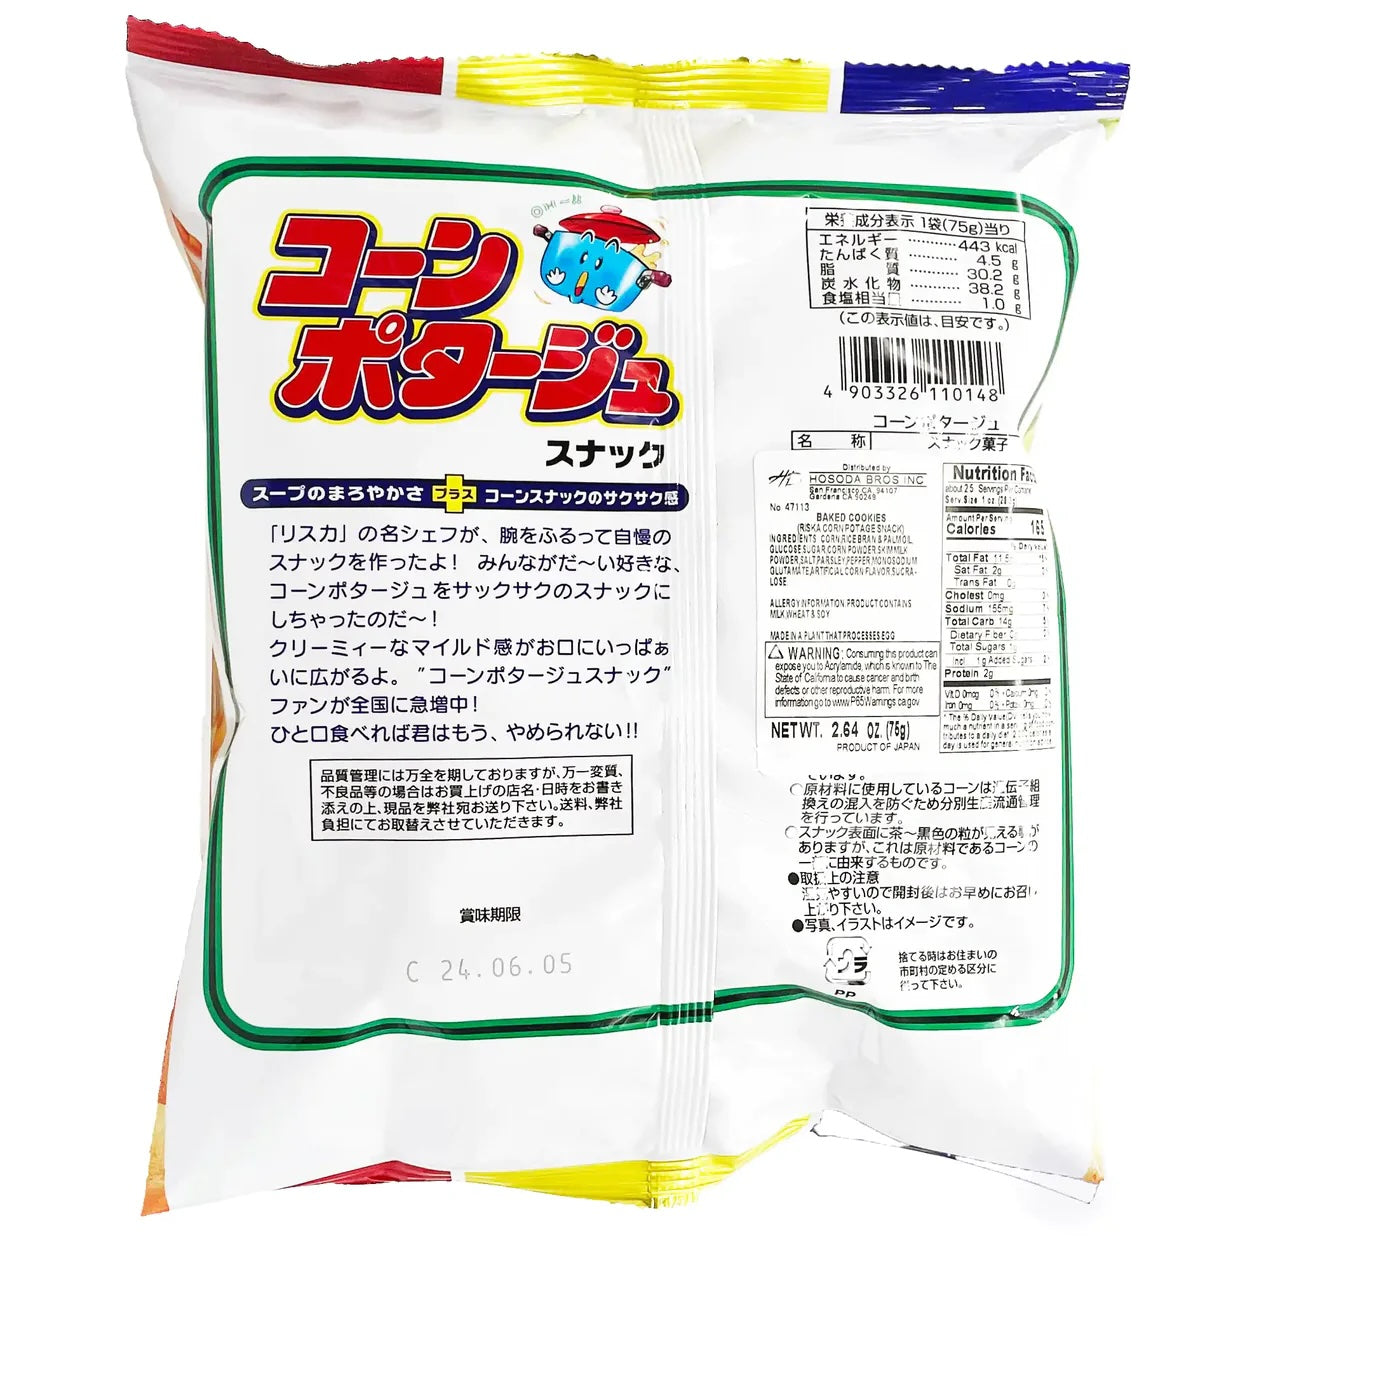 Riska Baked Snack, Corn Potage (Japan)